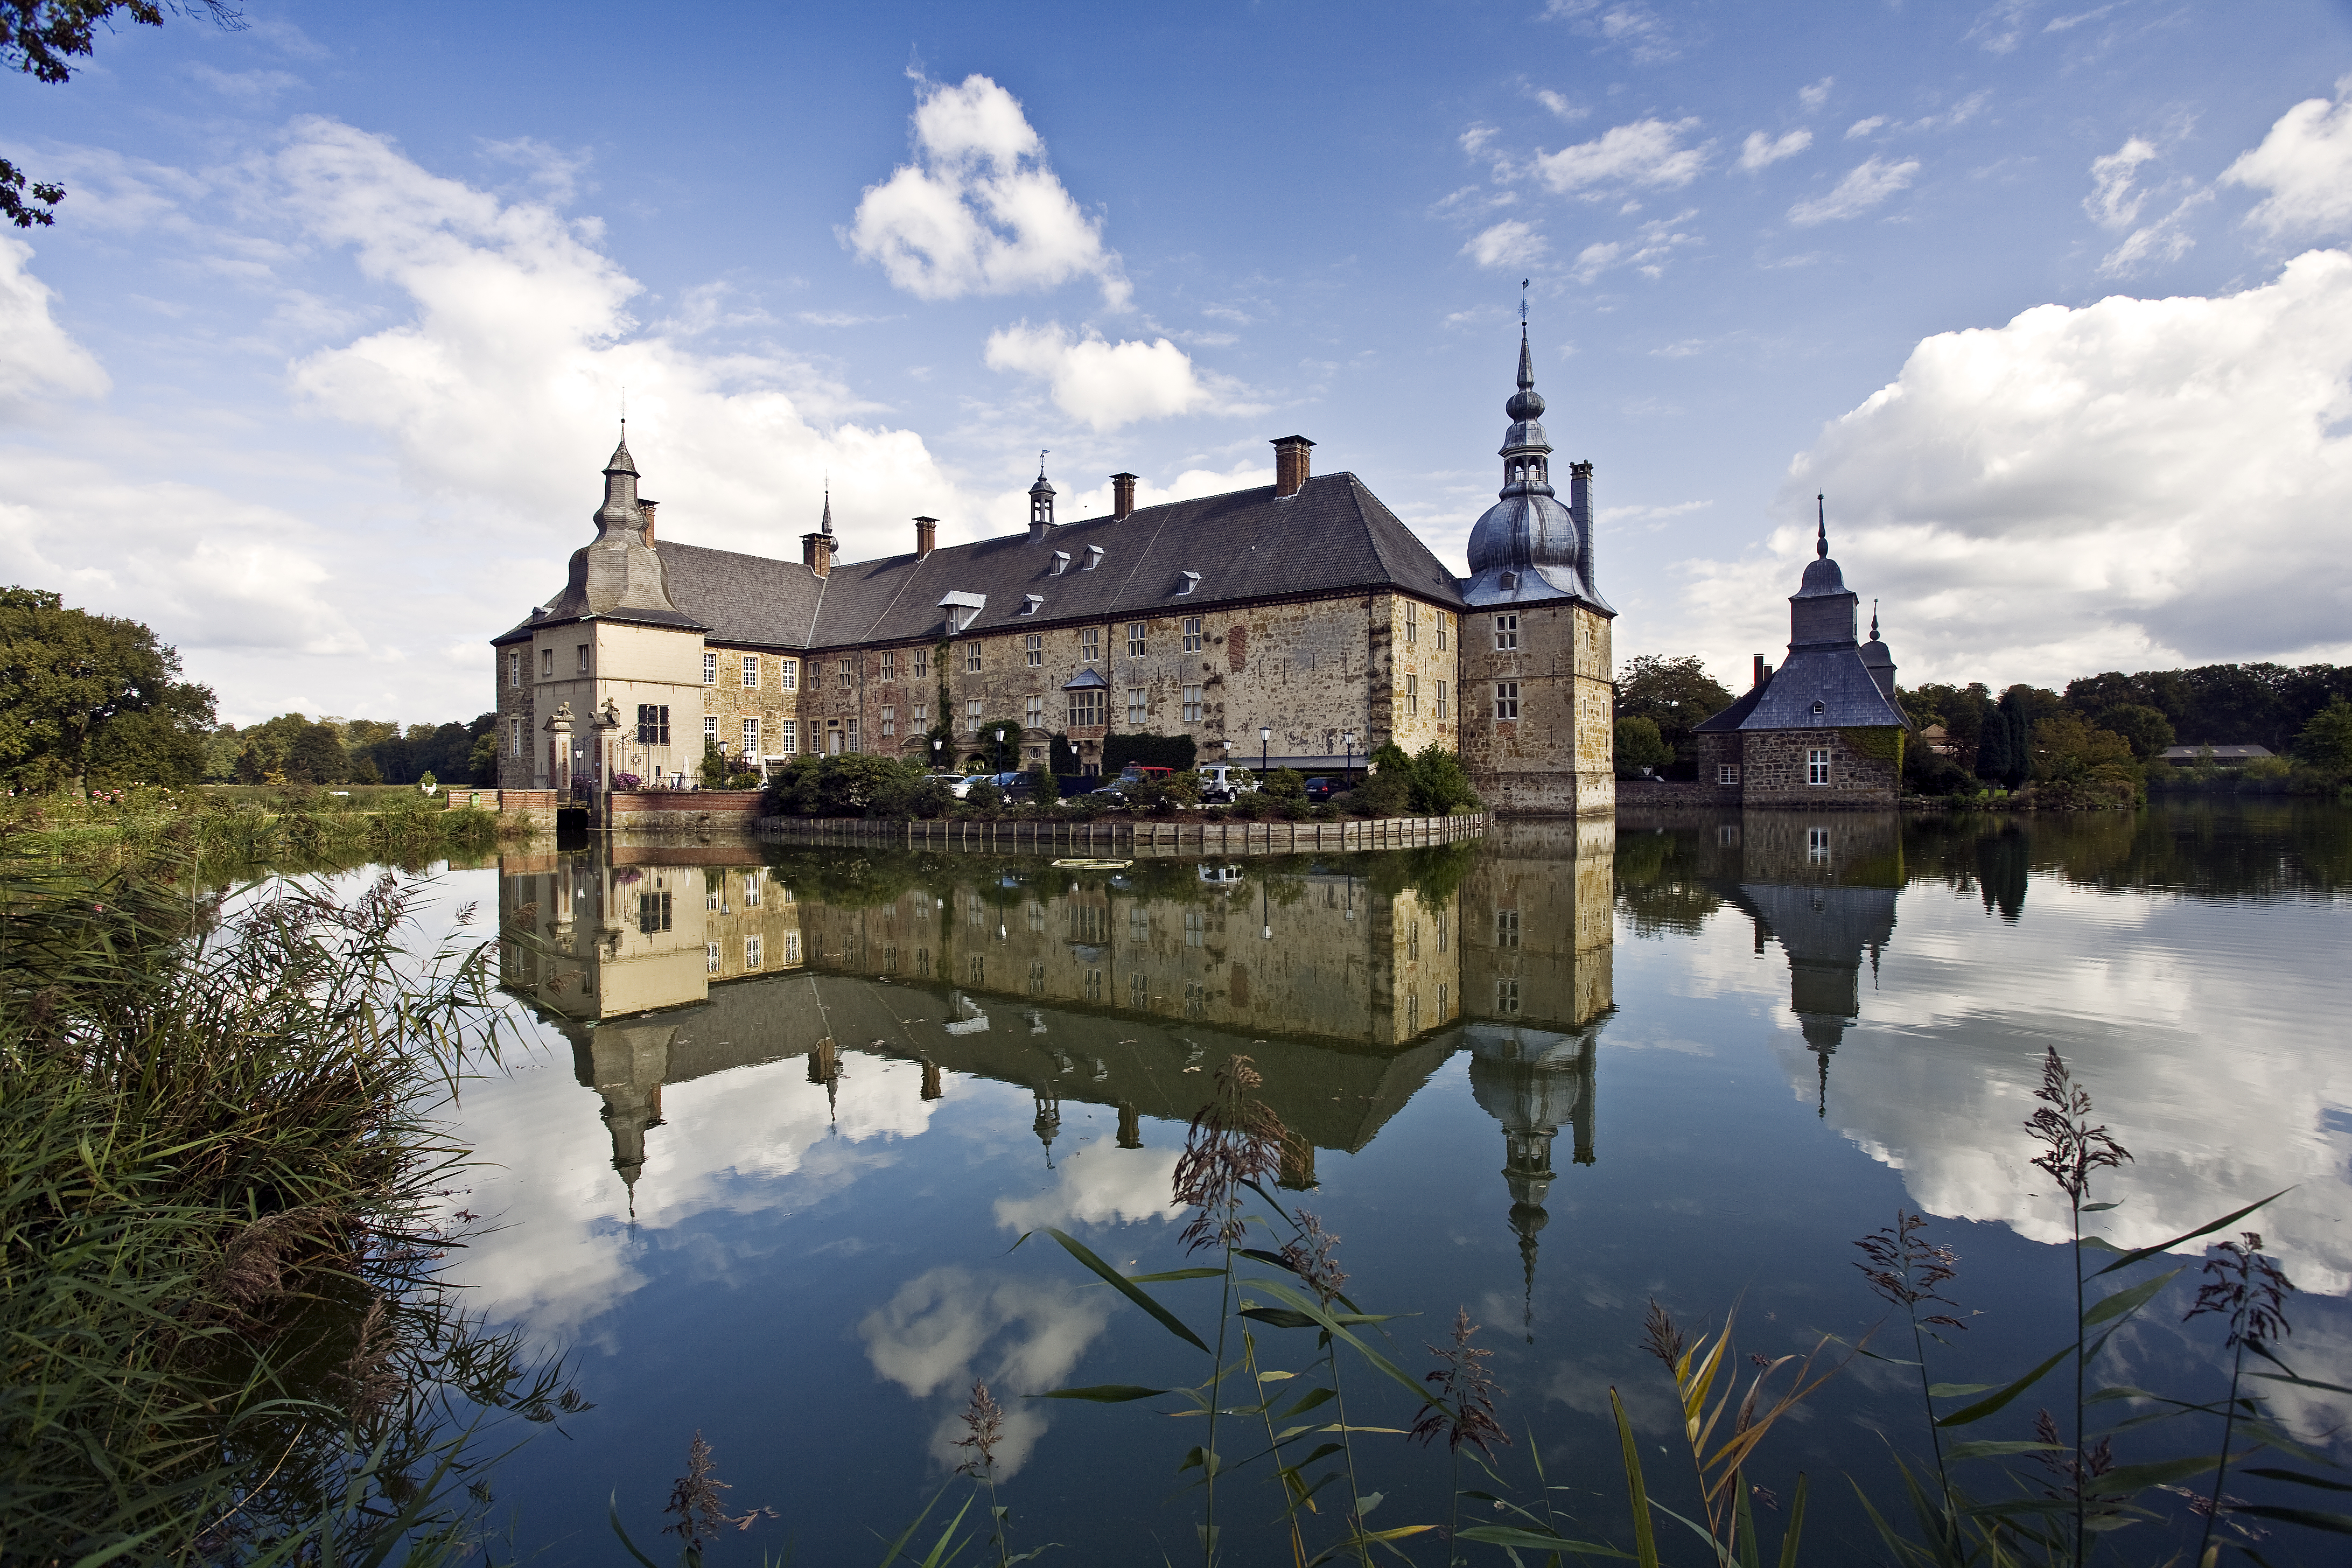 Das Bild zeigt das Wasserschloss Lembeck in Dorsten